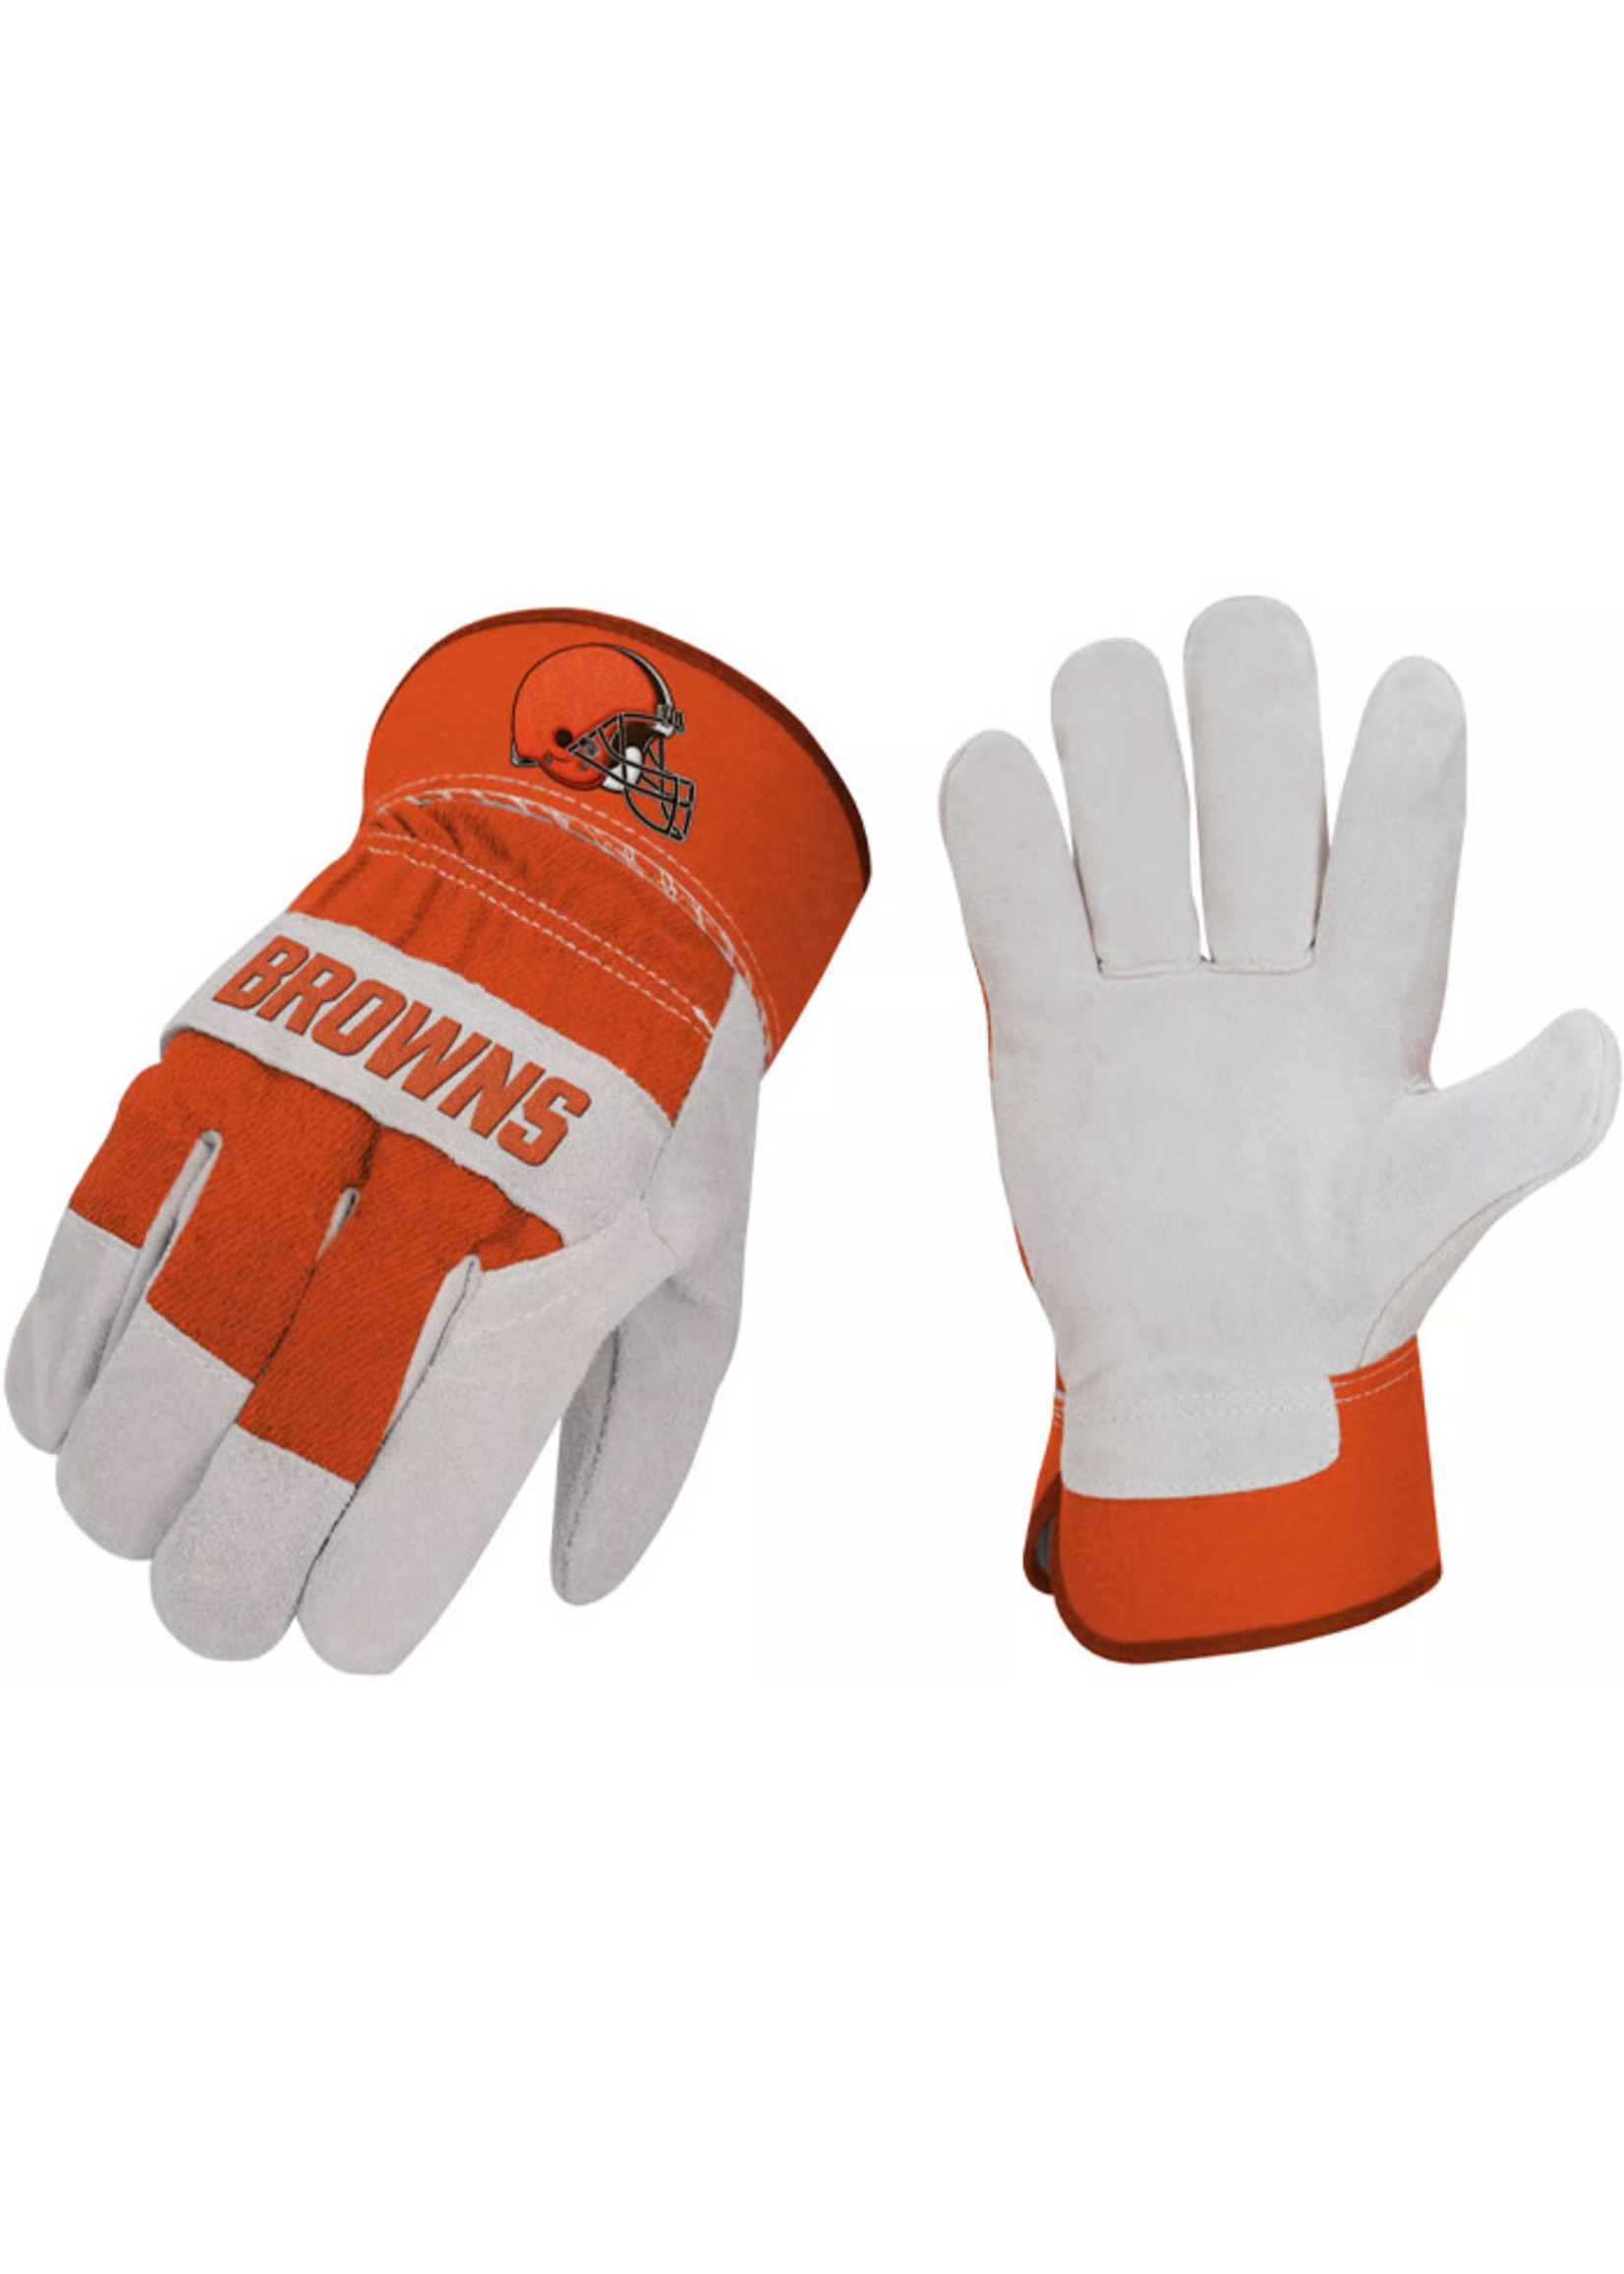 Cleveland Browns Work Gloves